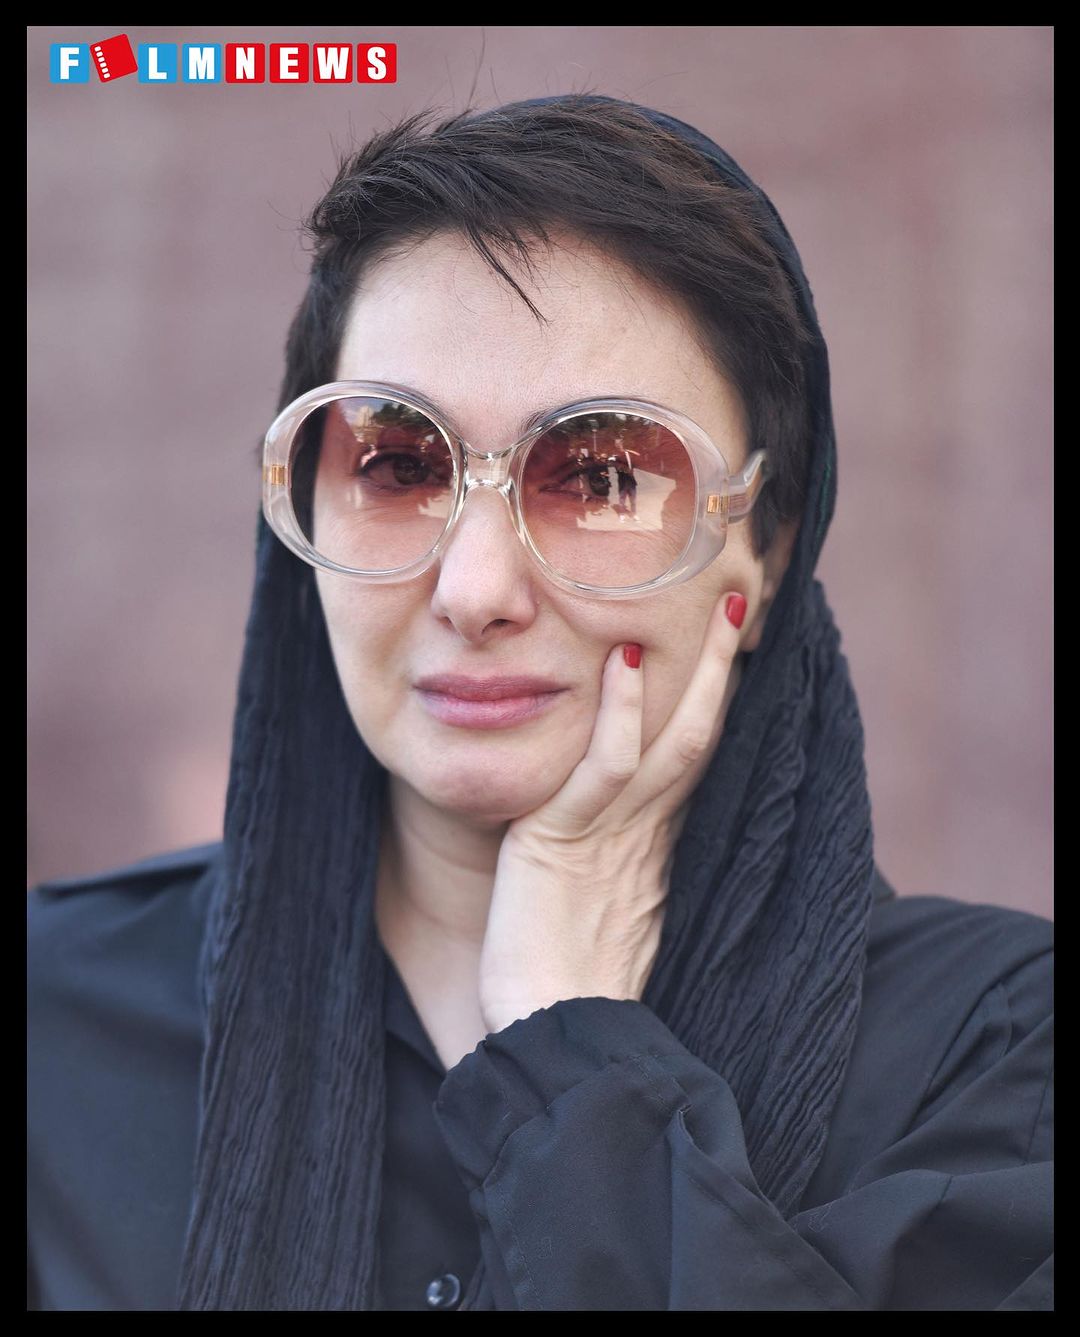 عینک عجیب و زمخت هانیه توسلی در ختم رضا داوودنژاد